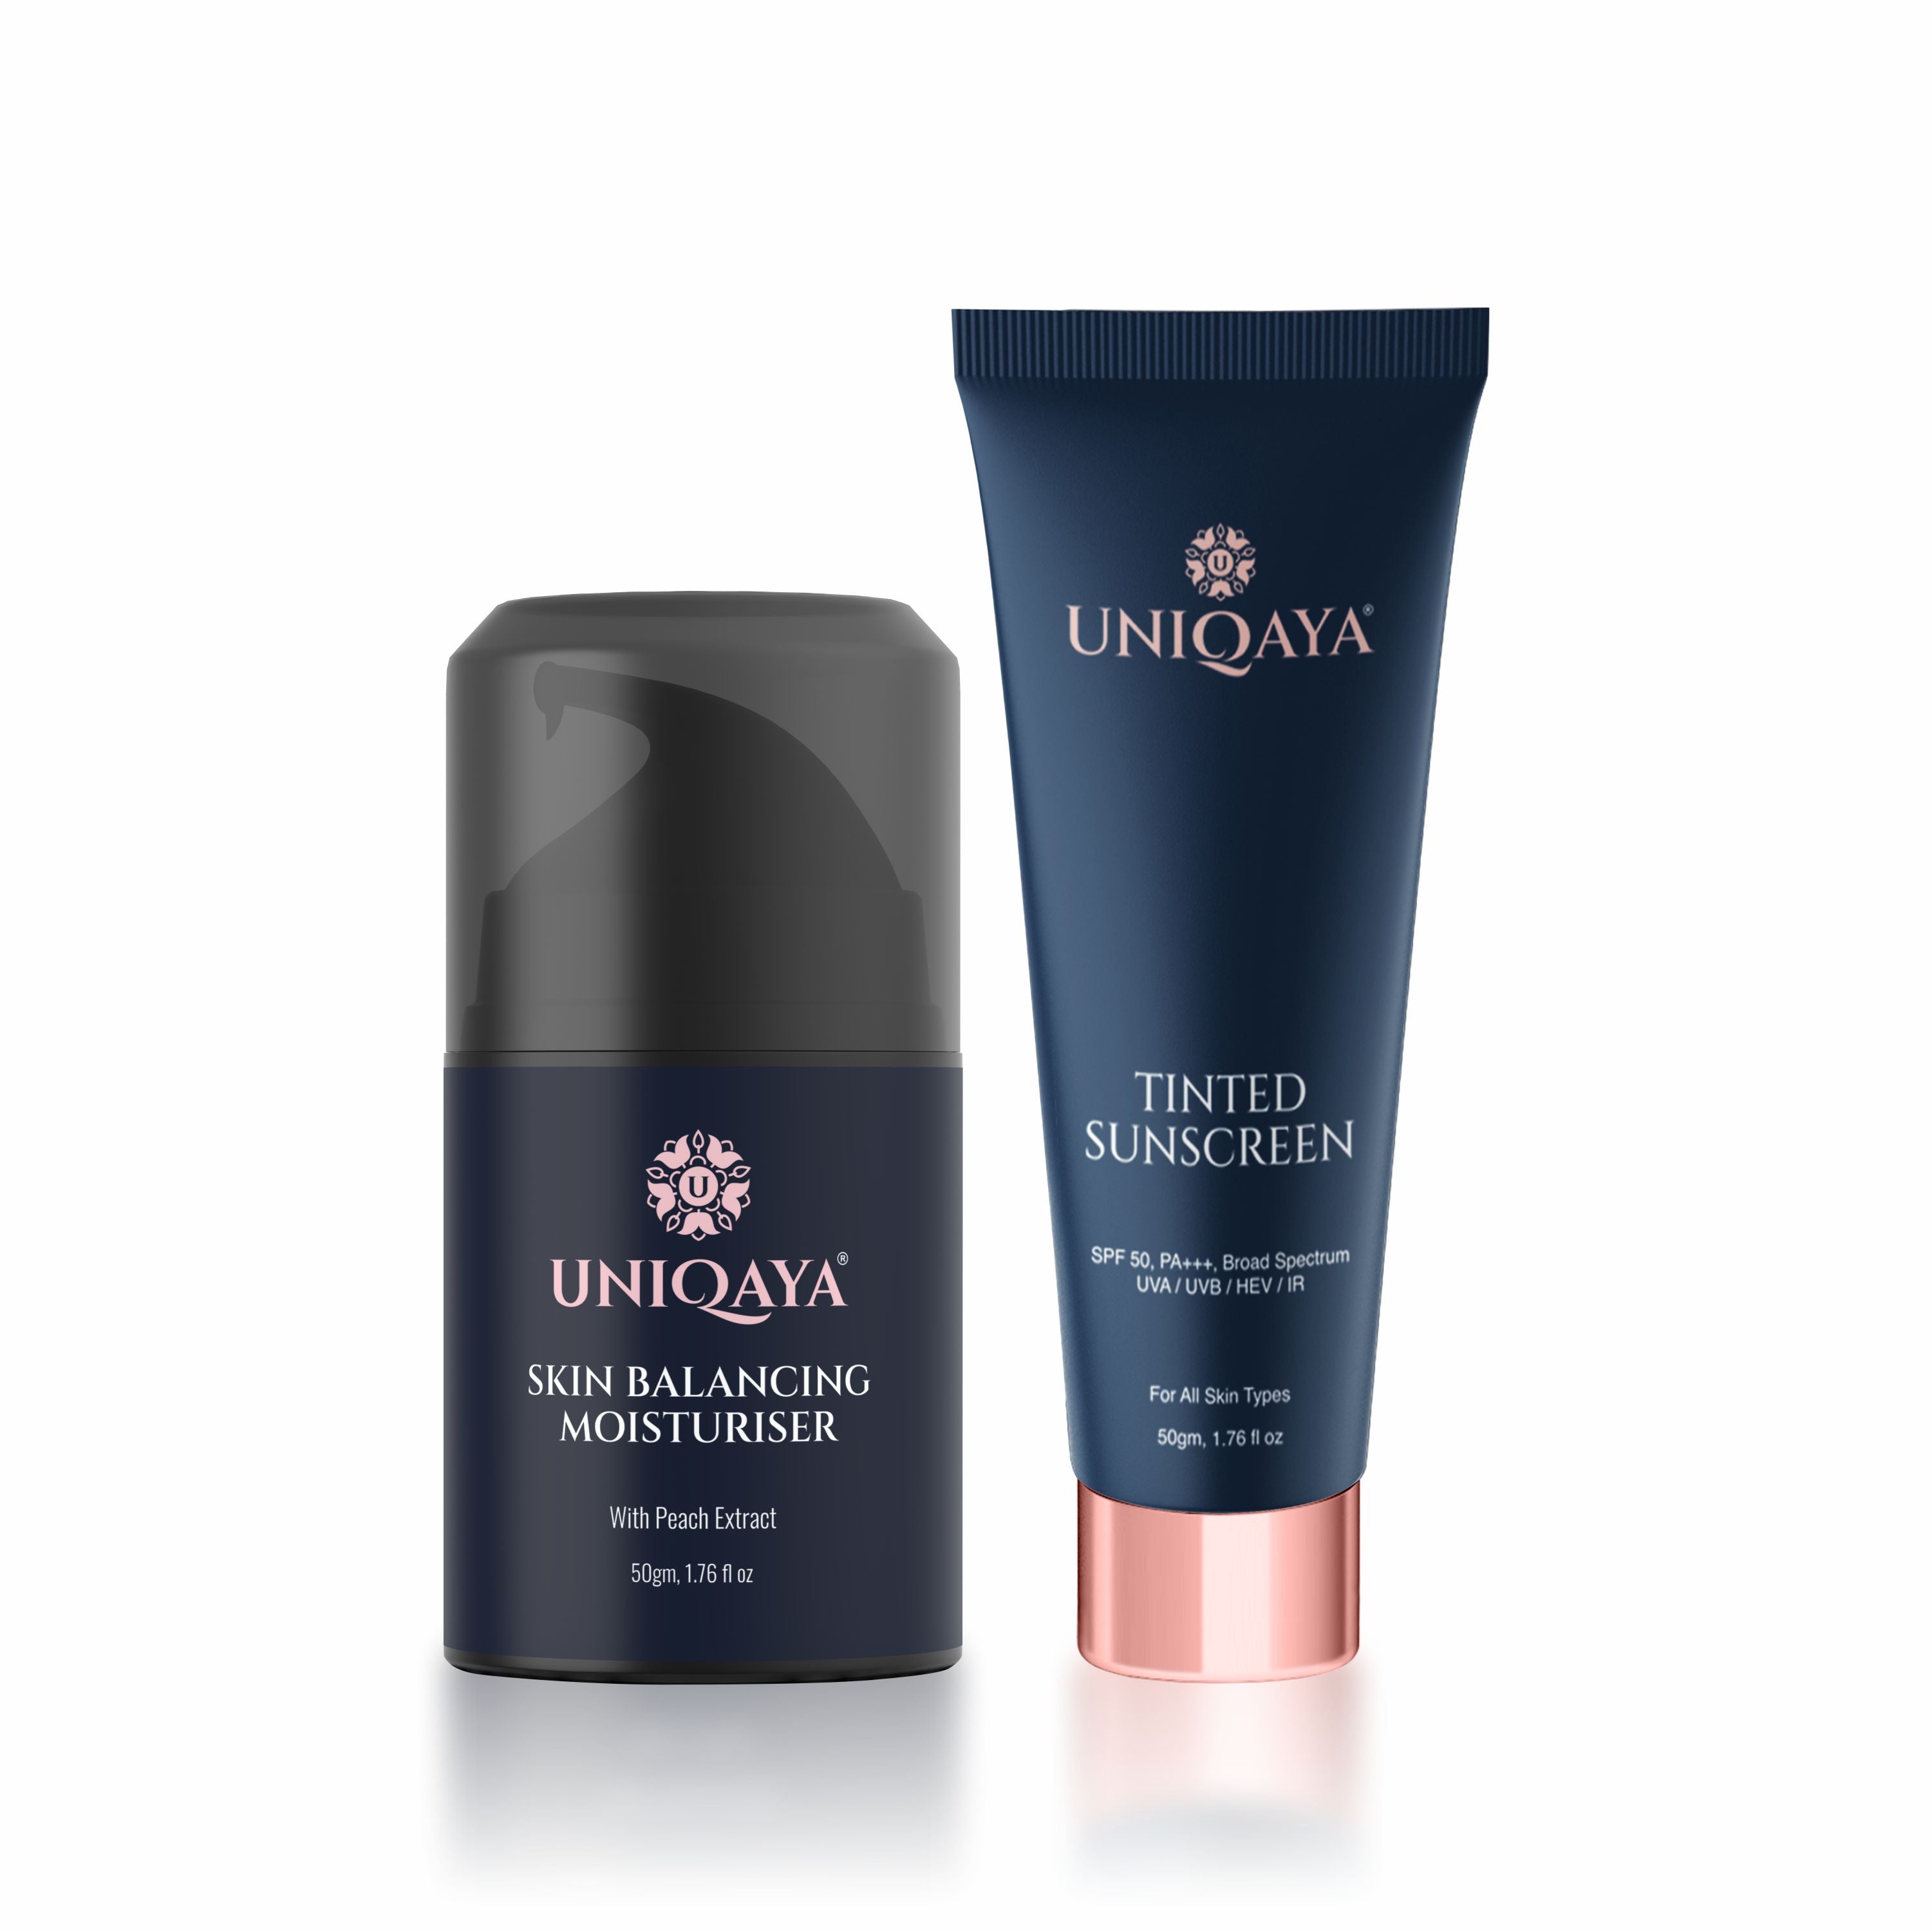 Uniqaya Skin Balancing Moisturiser and Tinted Sunscreen